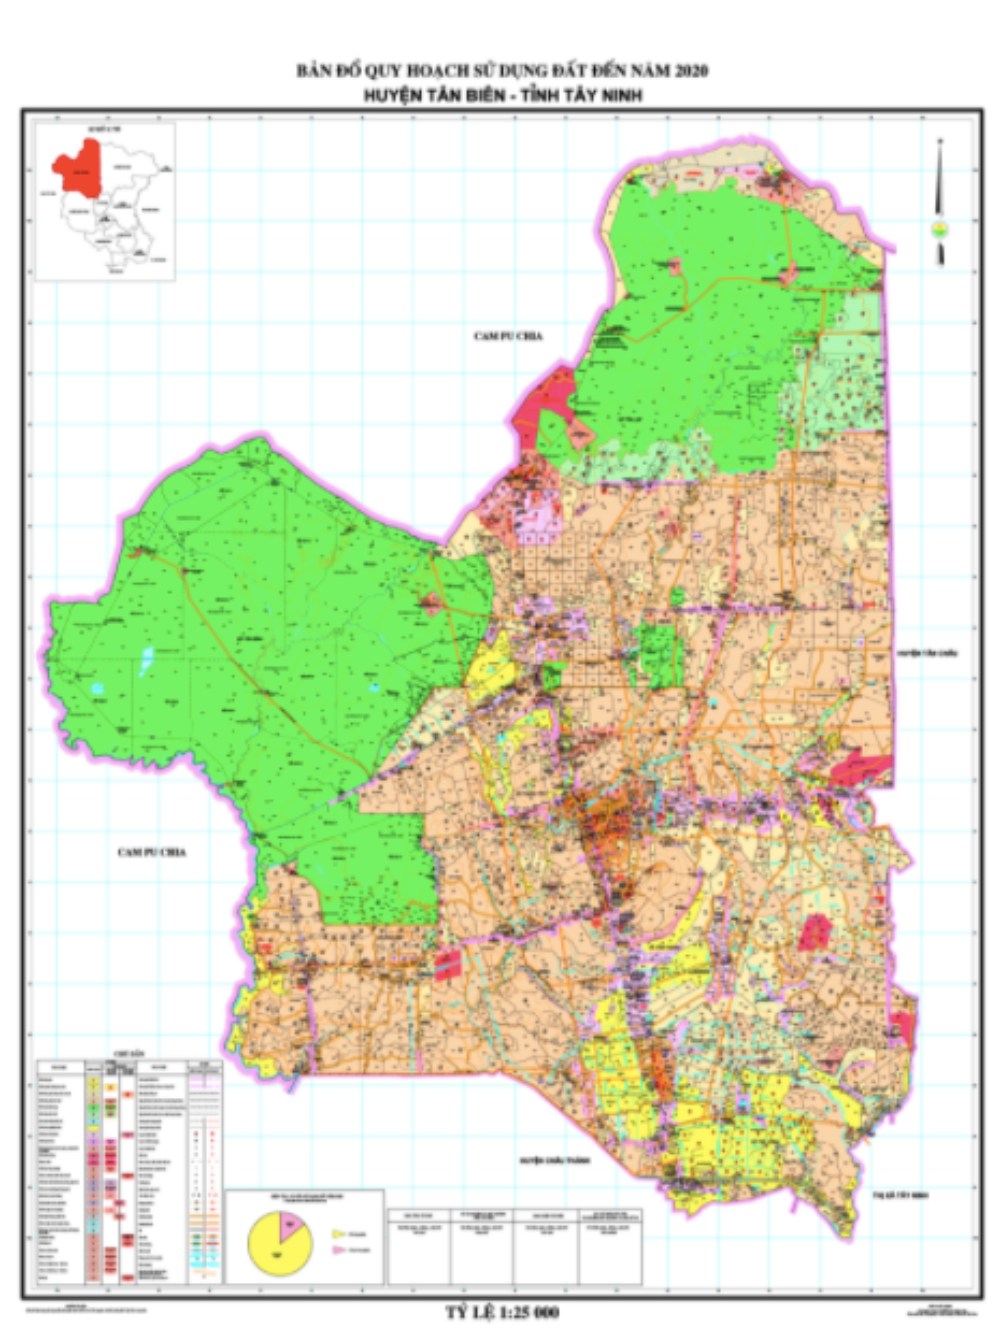 Bản đồ quy hoạch sử dụng đất Huyện Tân Biên mới nhất